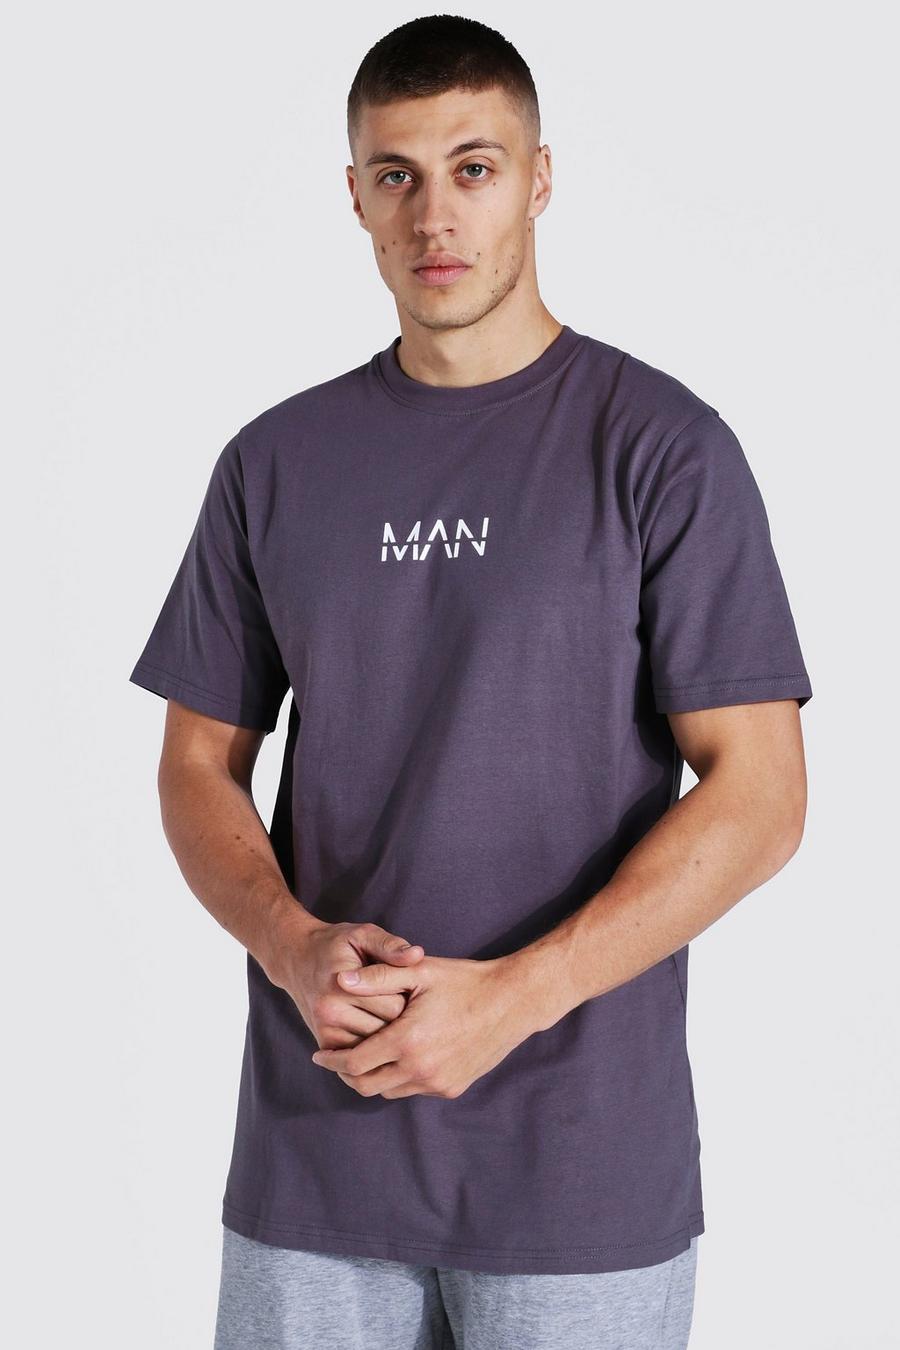 Langes Original Man T-Shirt, Charcoal image number 1